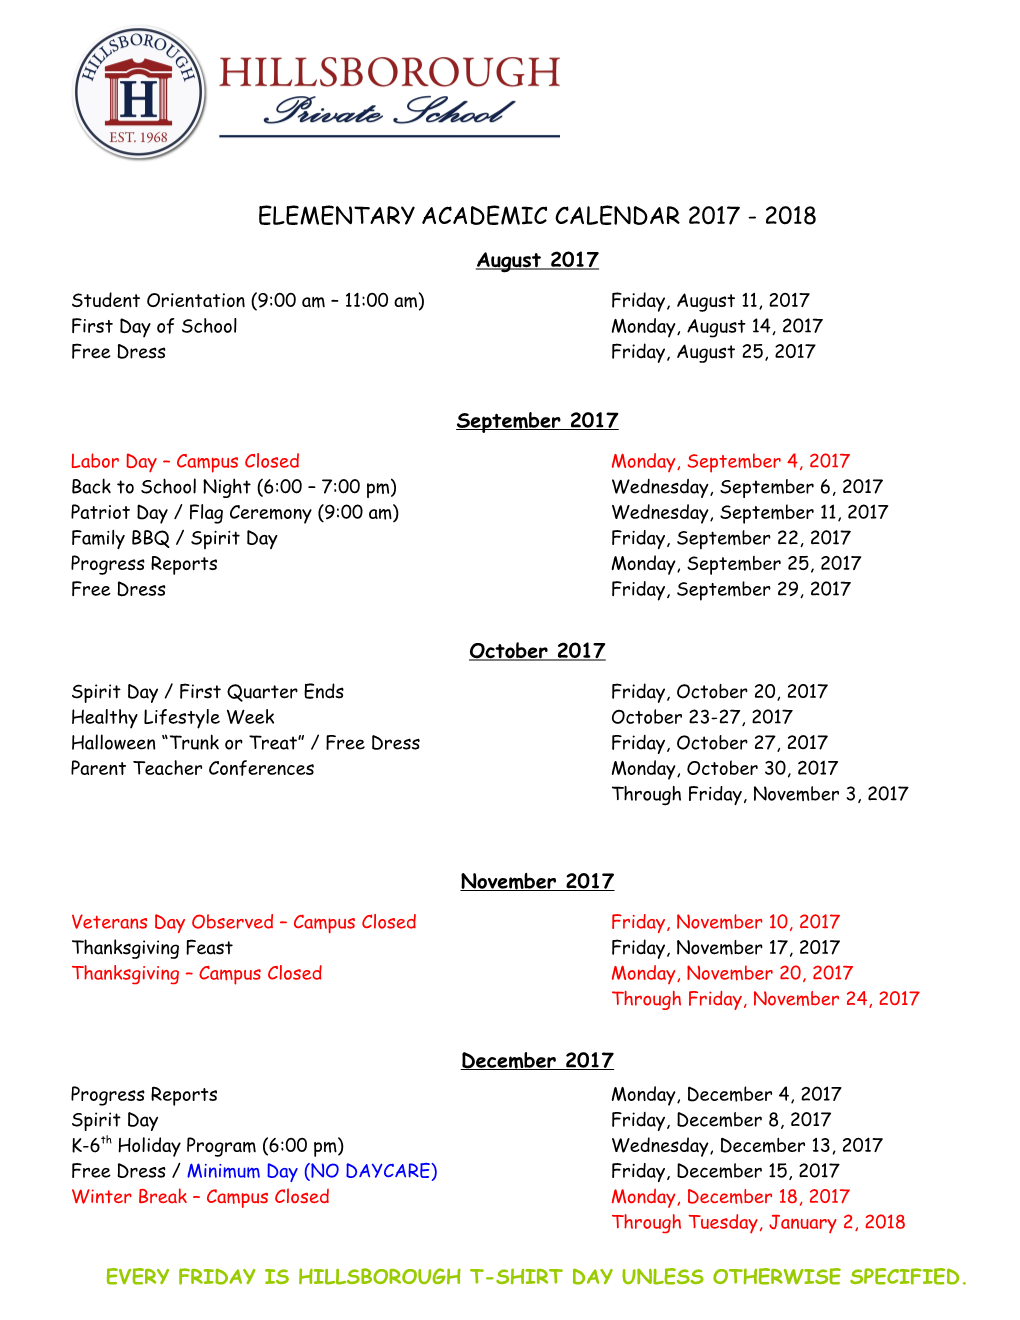 Elementaryacademic Calendar 2017 - 2018